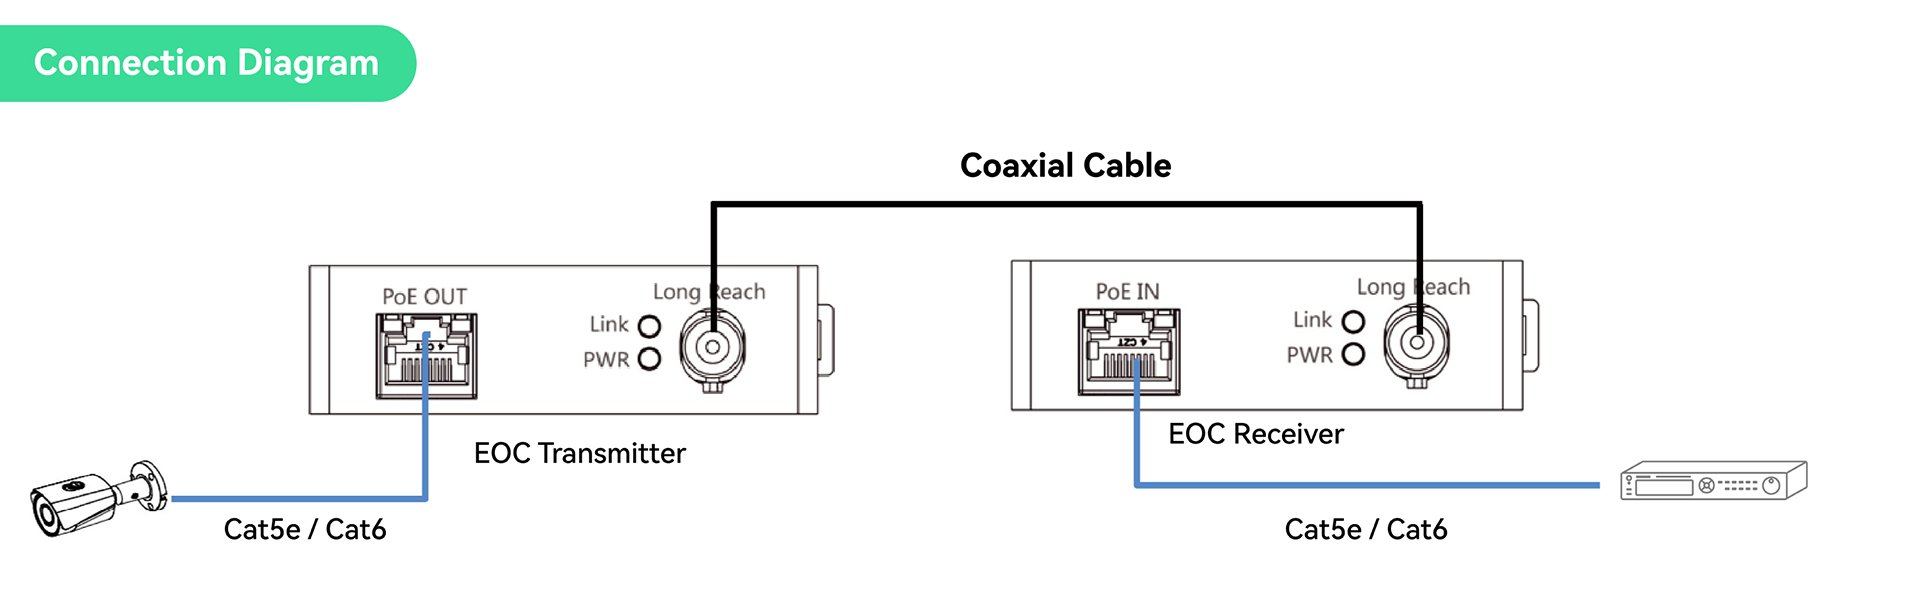 EOC Connection Diagram